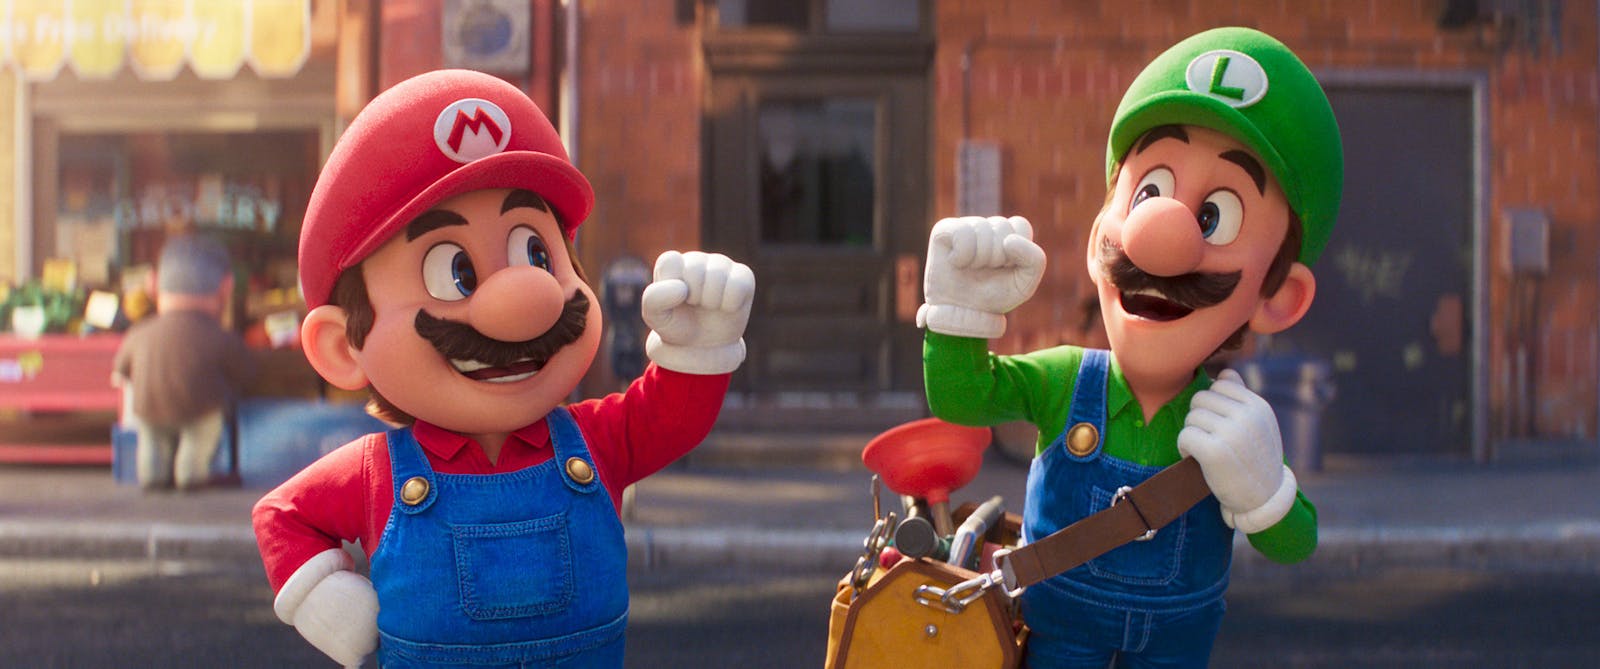 Illumination and Nintendo planning Super Mario Bros. film